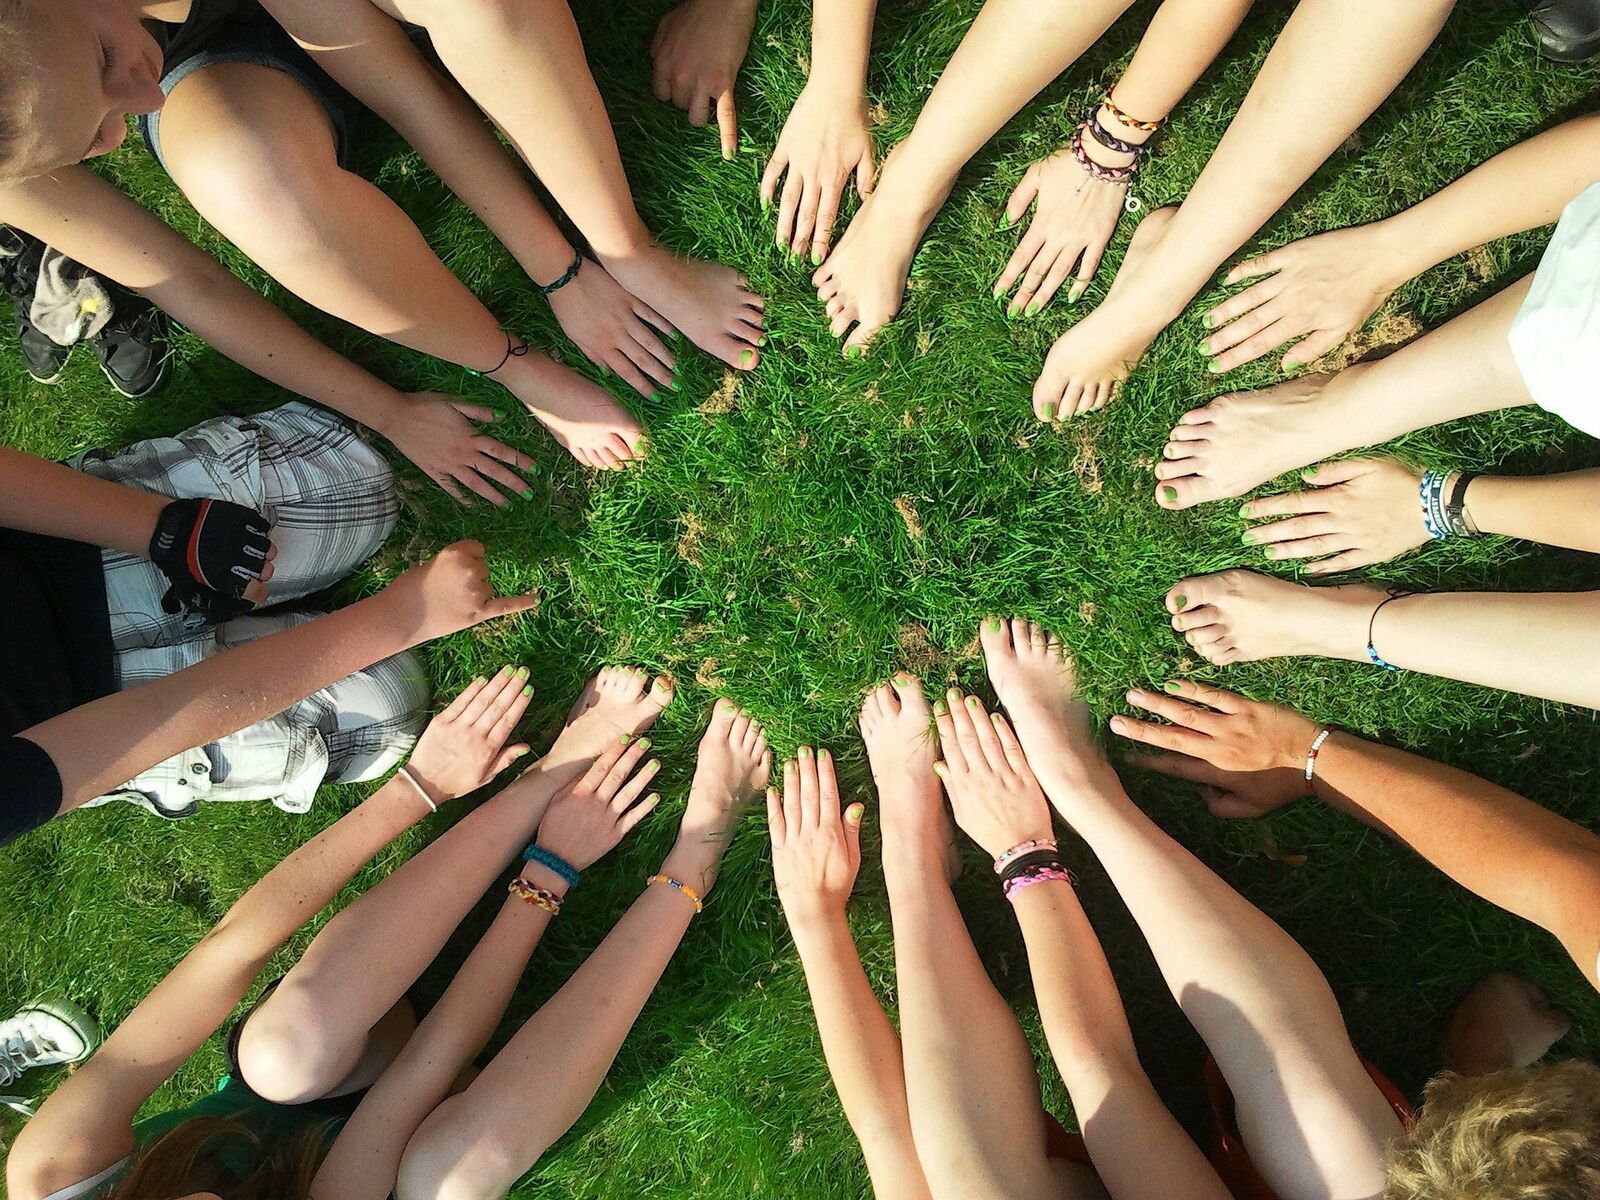 Eine Gruppe von Menschen legen Hände und Füße in einen Kreis als Zeichen der Gemeinschaft